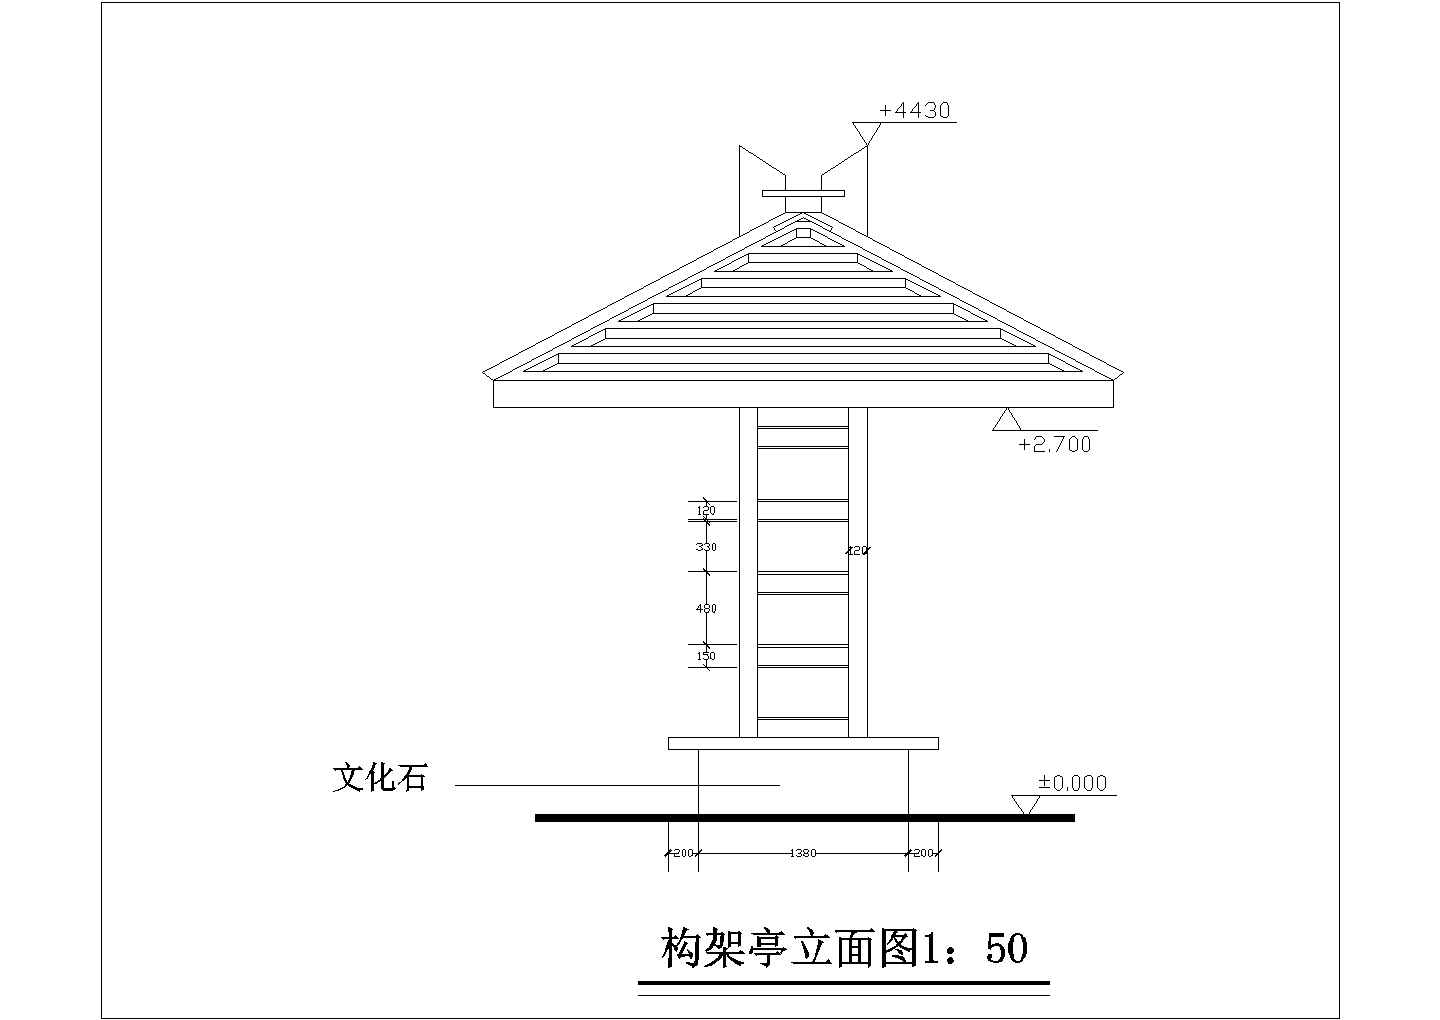 北京某文化公园内部的构架凉亭建筑设计CAD图纸